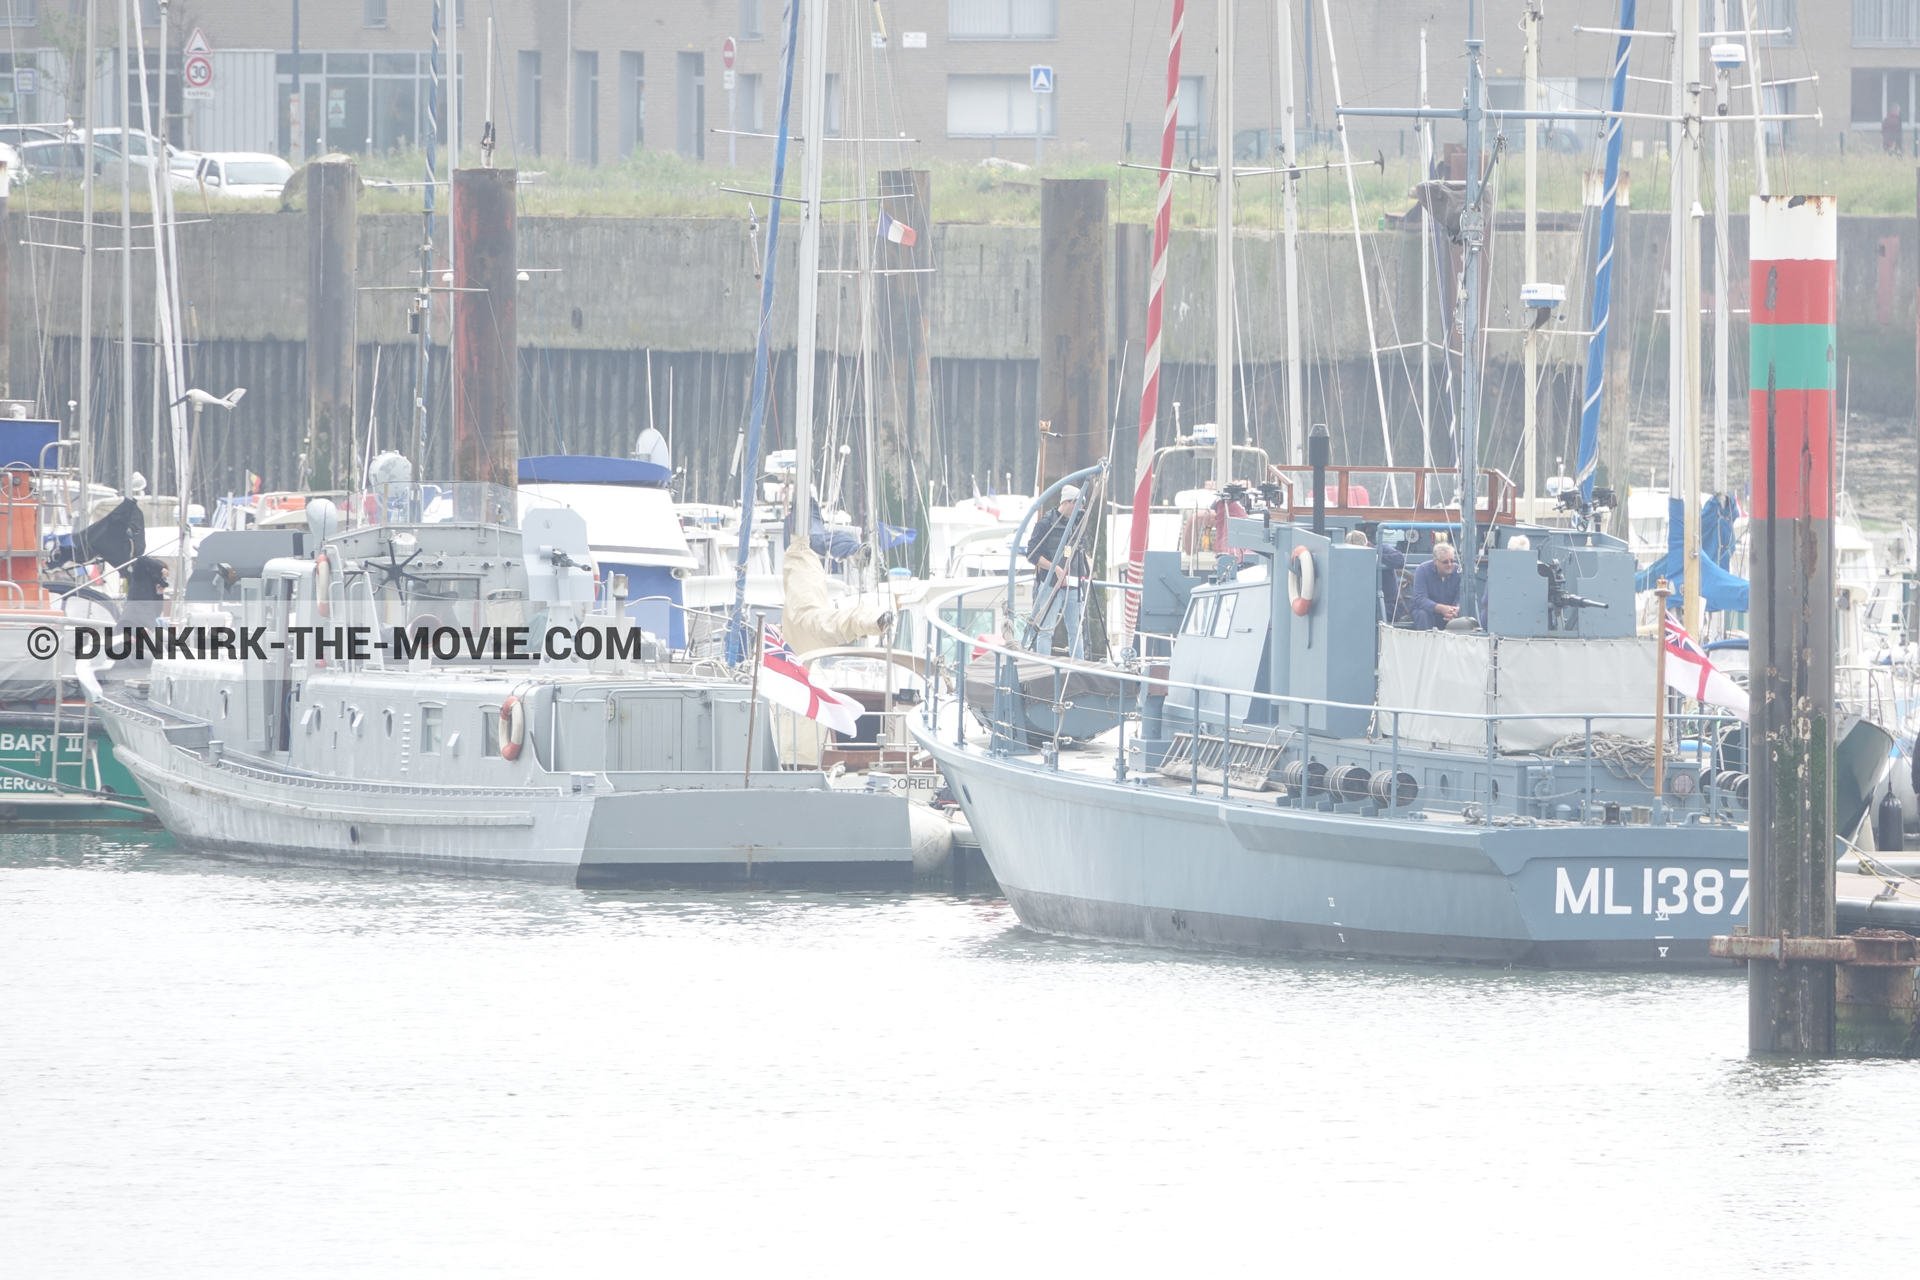 Fotos con barco, HMS Medusa - ML1387,  durante el rodaje de la película Dunkerque de Nolan